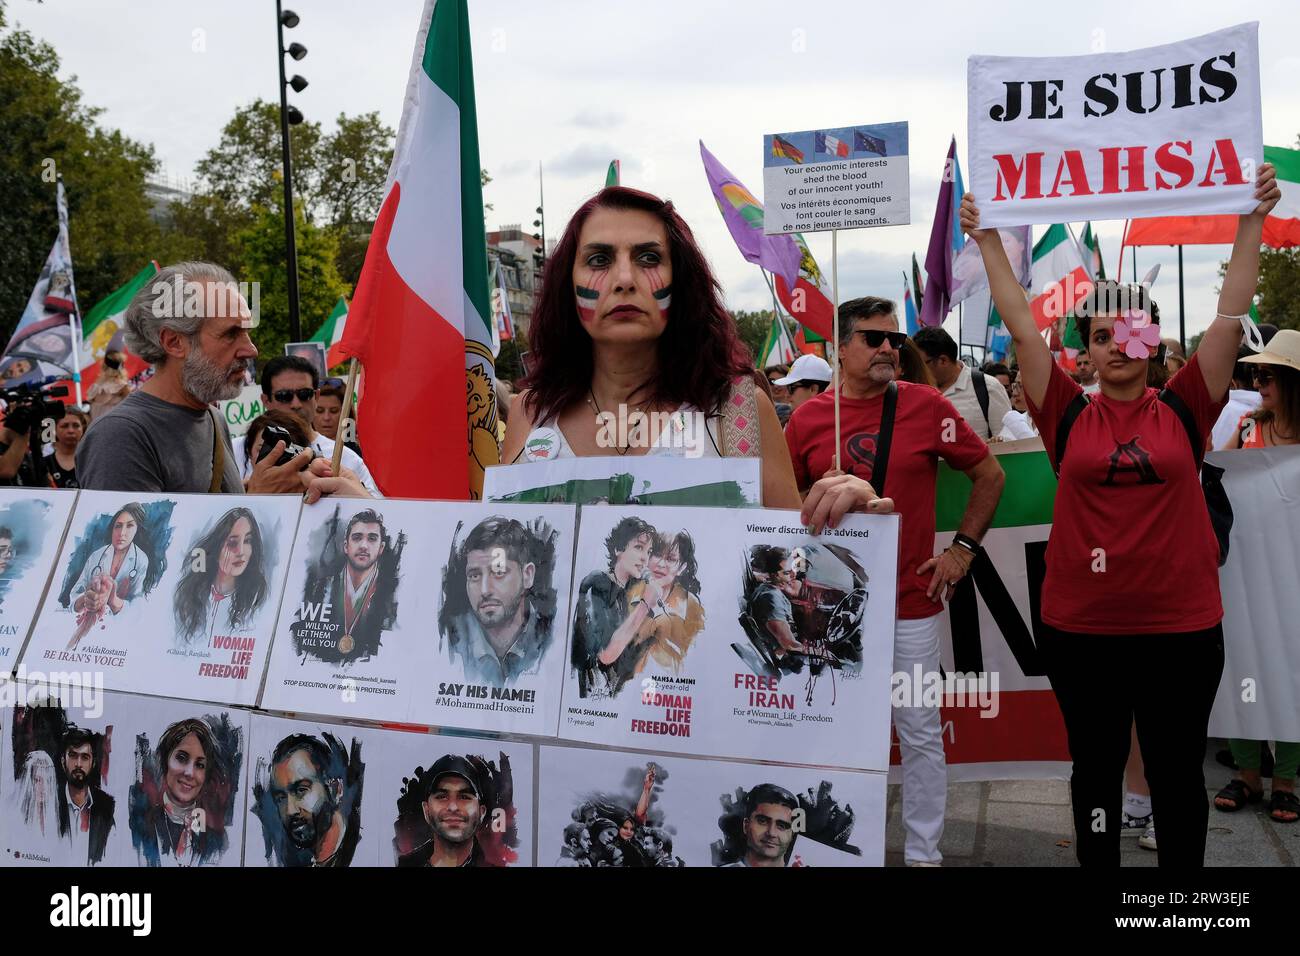 Manifestation à Paris pour le 1er anniversaire de la mort de Mahsa Amini en Iran.plusieurs centaines de personnes au départ du cortège à la Bastille Foto Stock